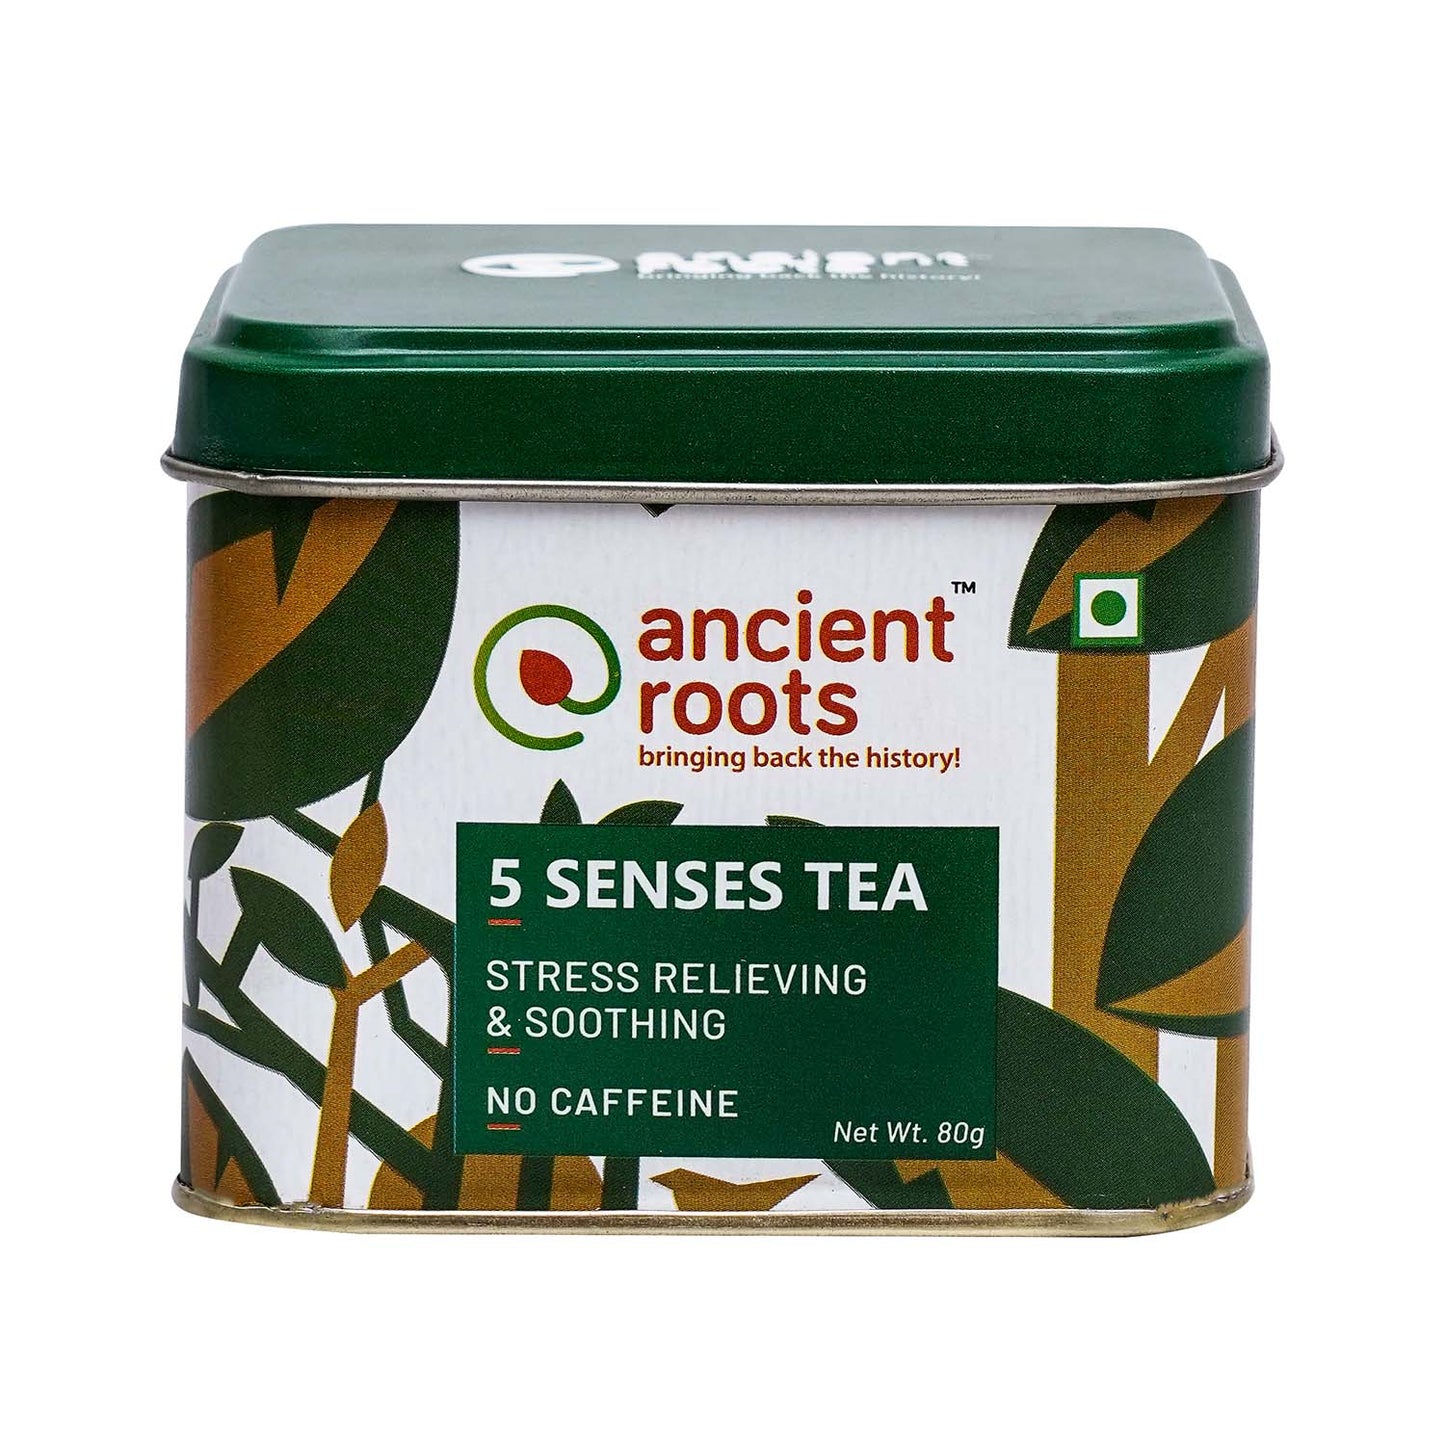 5 Senses Tea